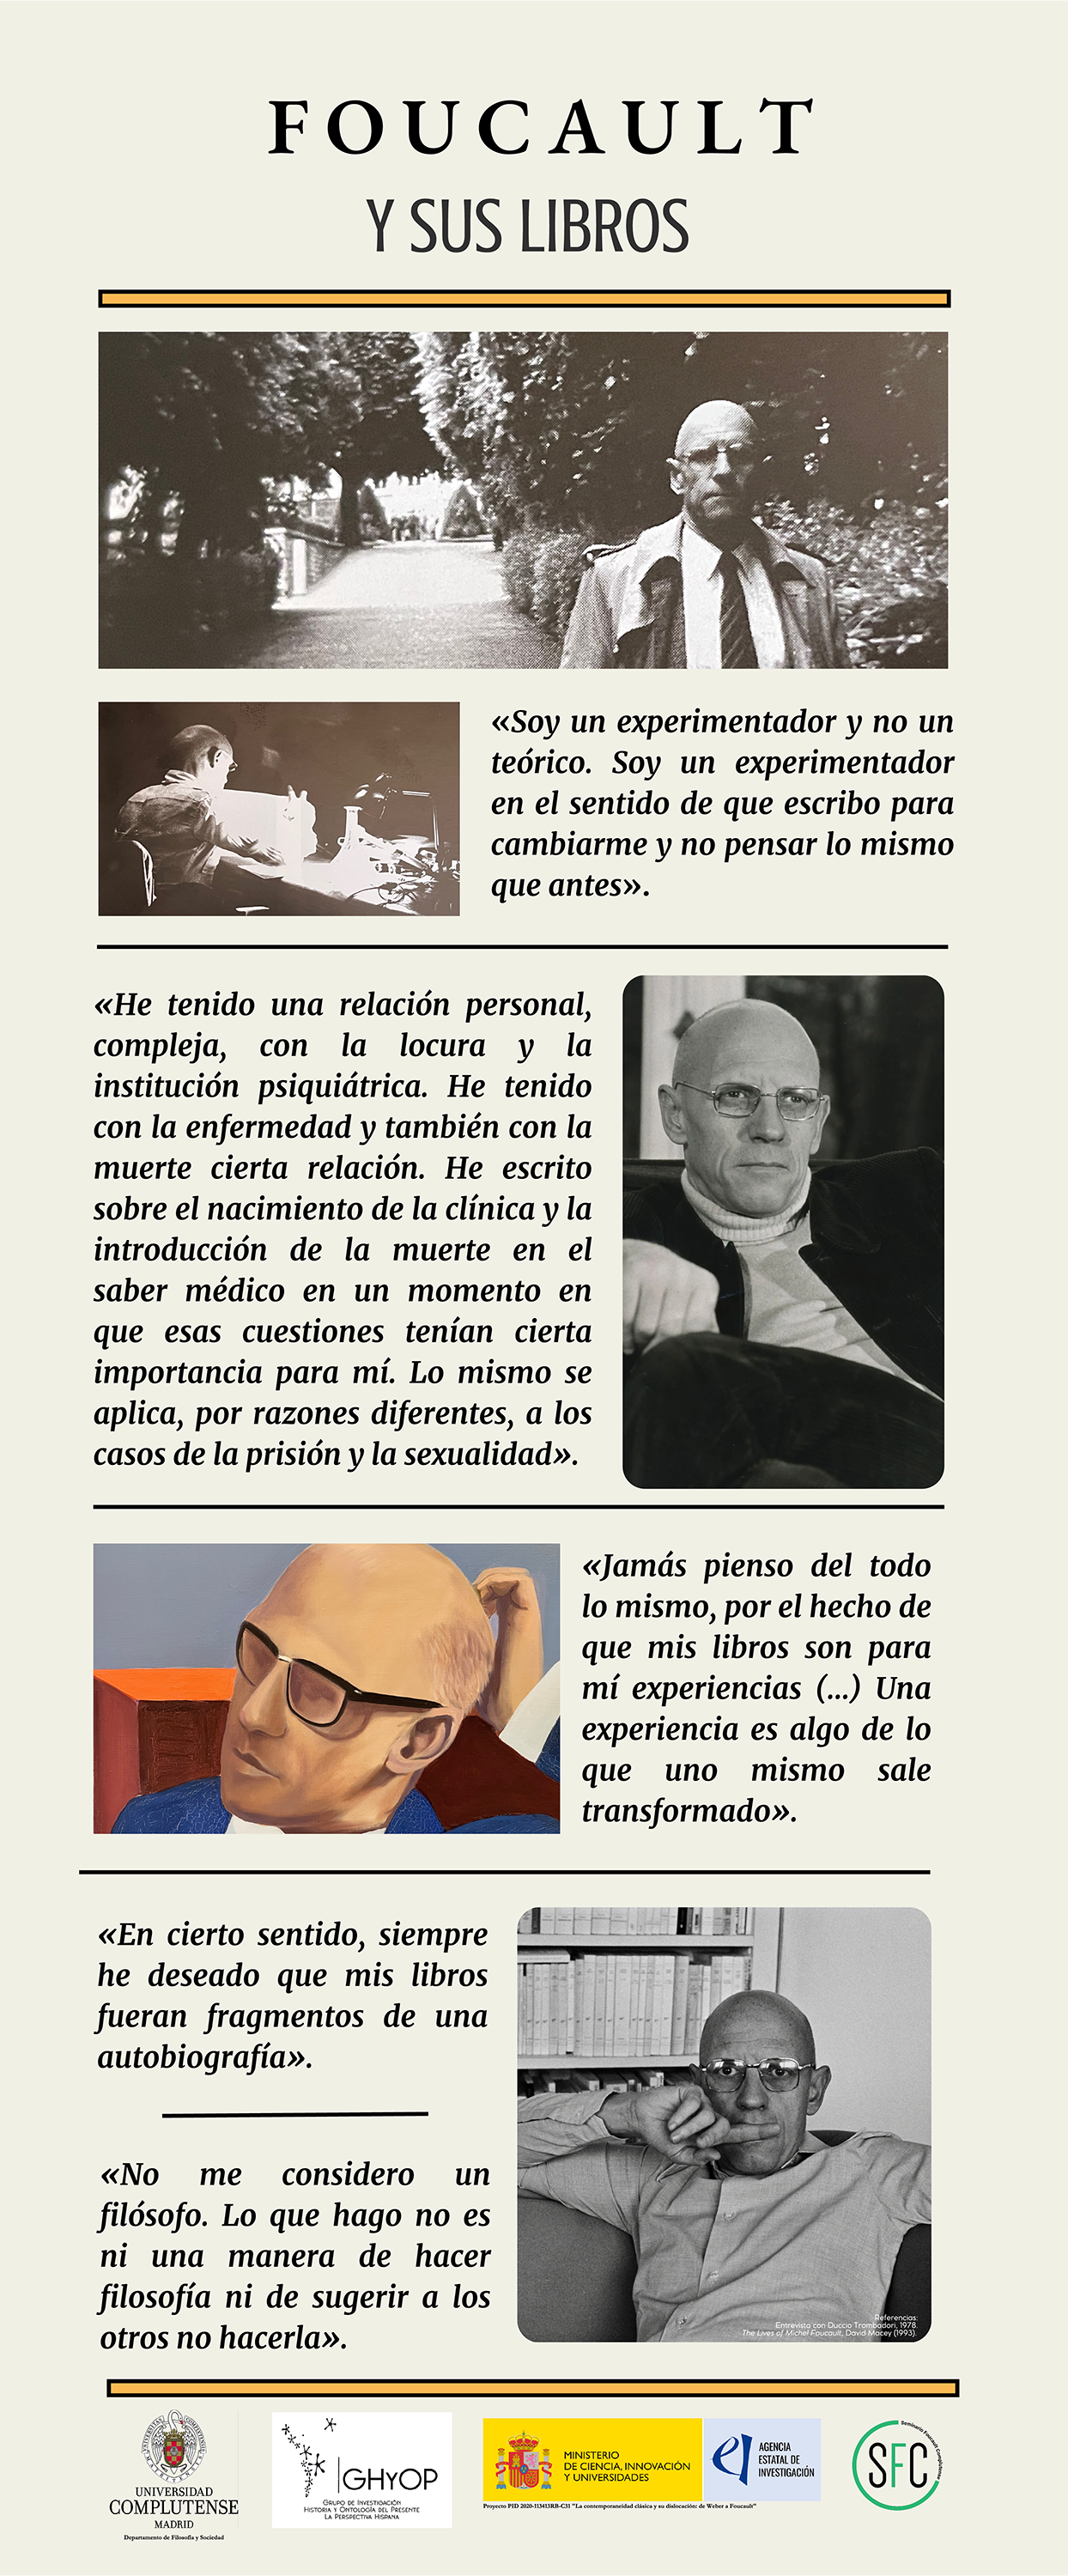 Foucault y sus libros